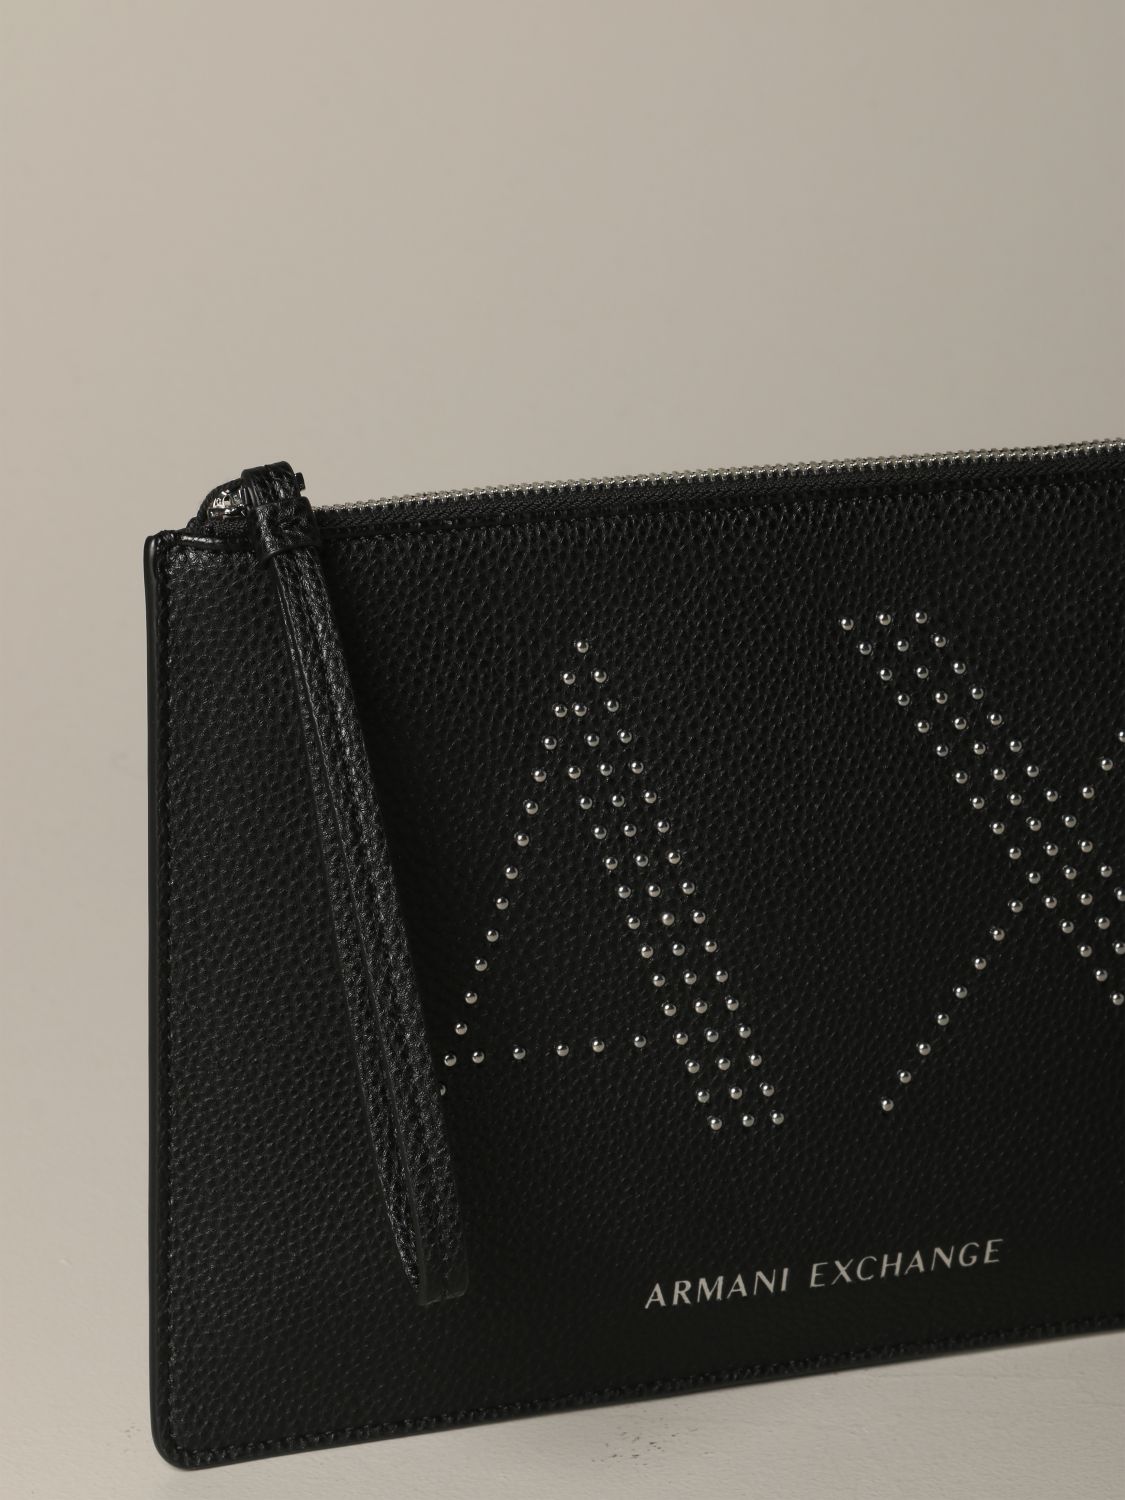 ax exchange armani